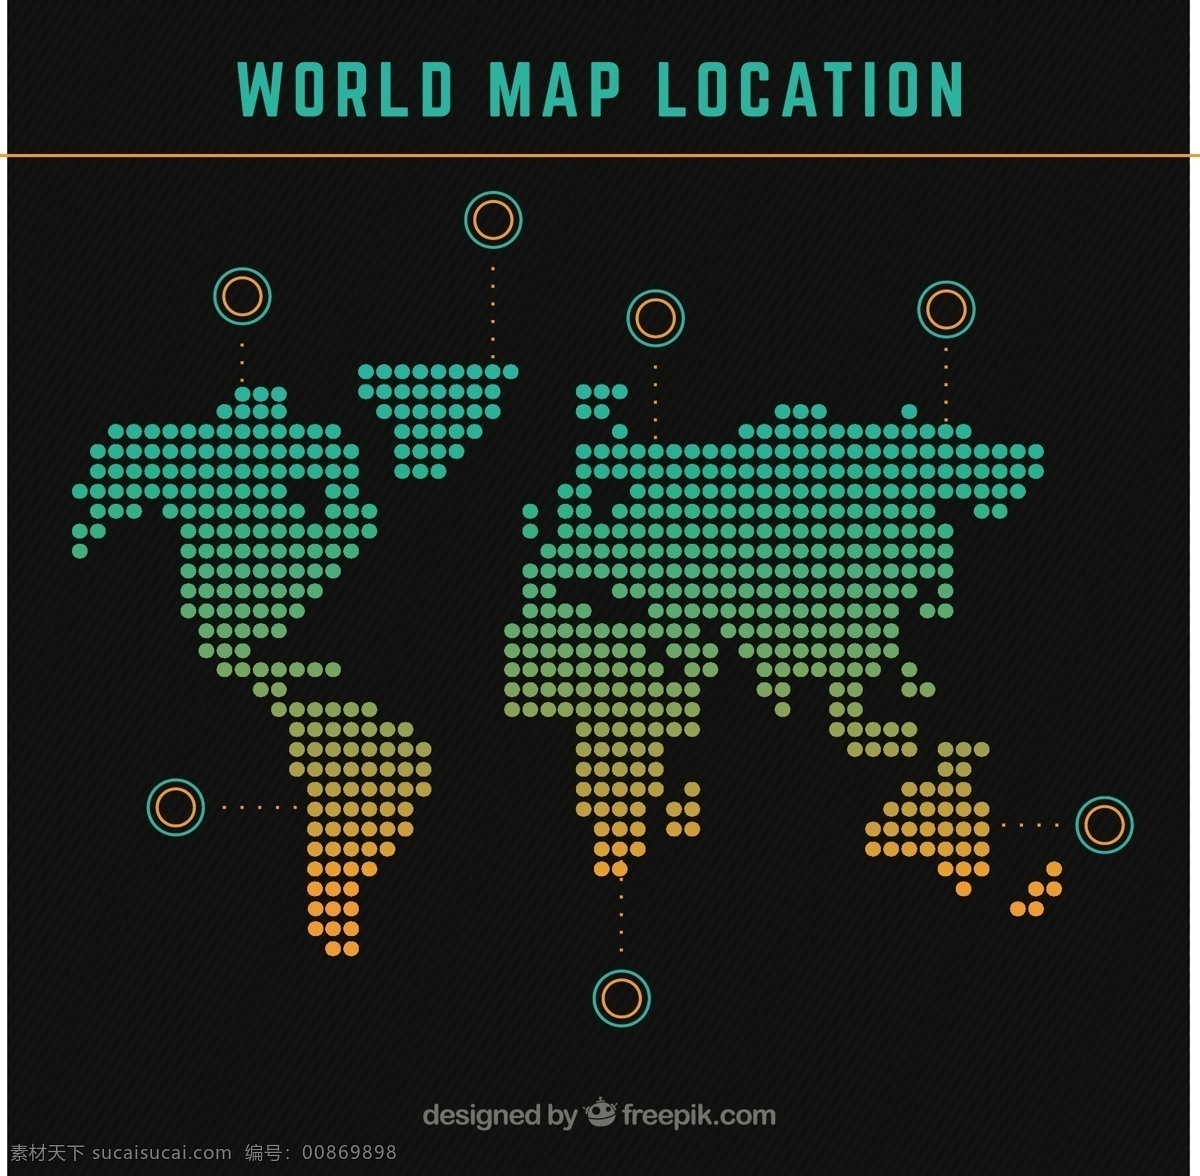 世界地图模板 信息图表 地图 世界 世界地图 图形 图表 位置 国际 星罗棋布 全球